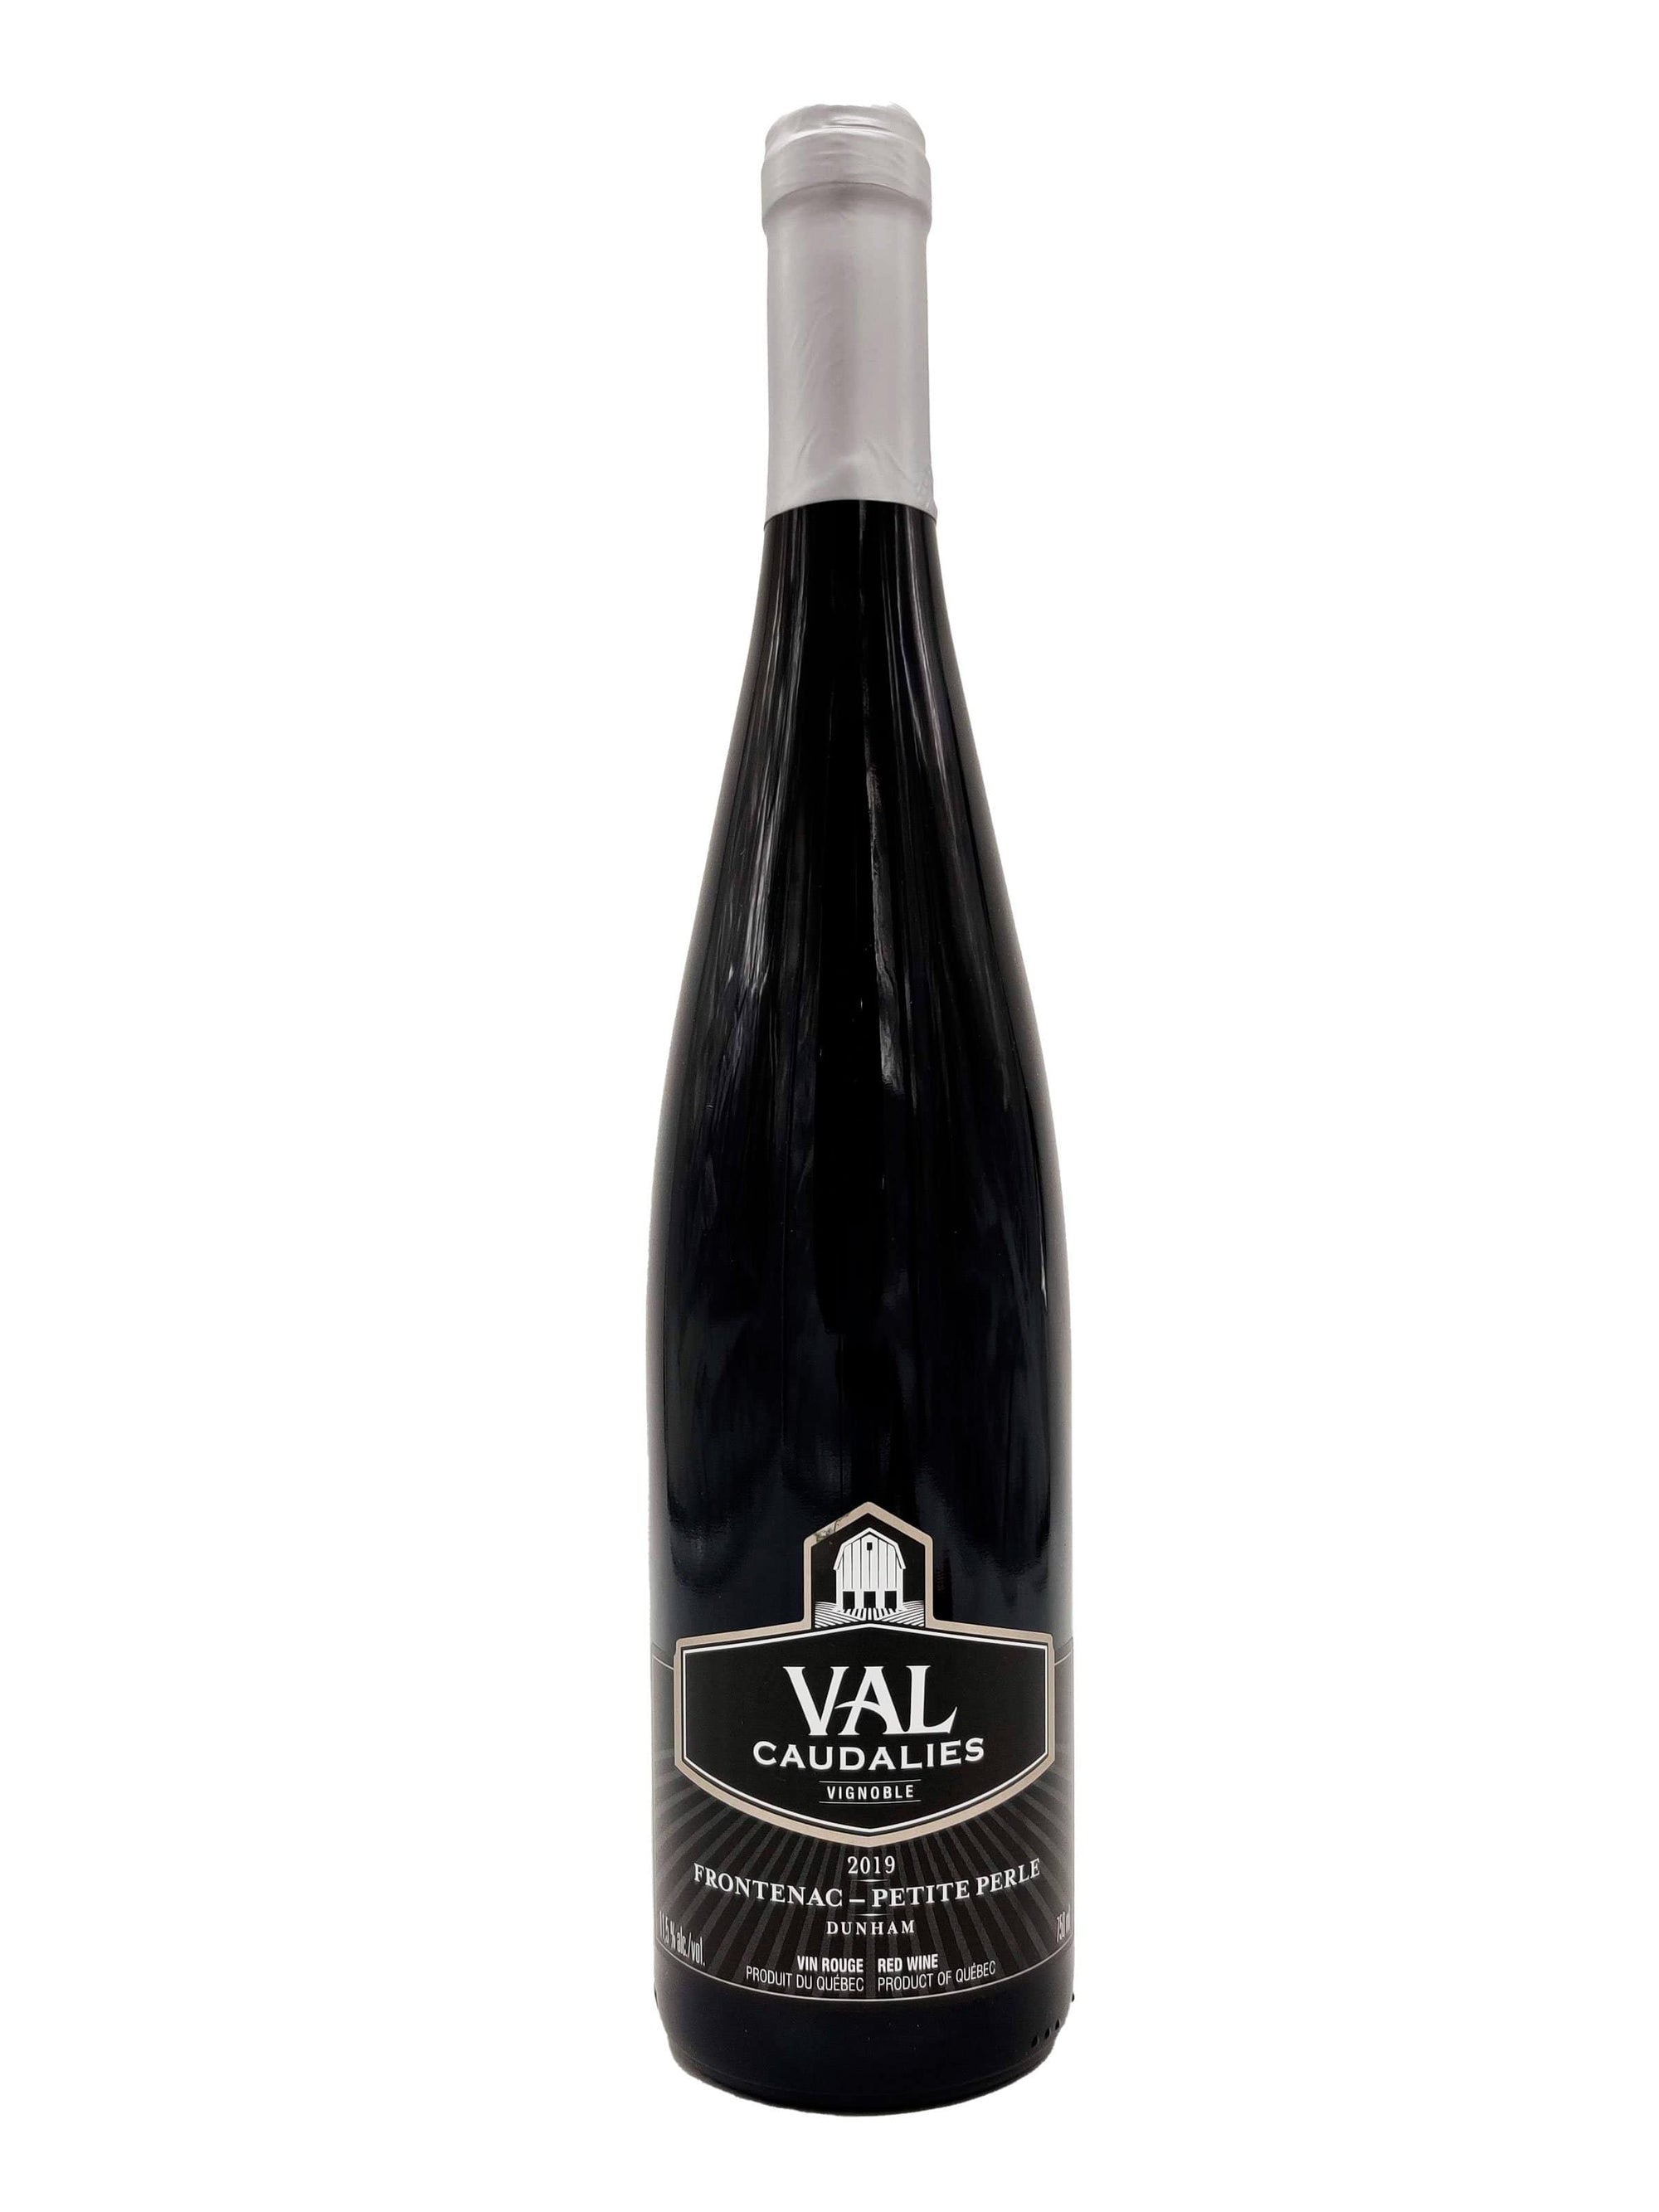 Val Caudalies vin Frontenac Noir-Petite Perle - Vin rouge de Val Caudalies